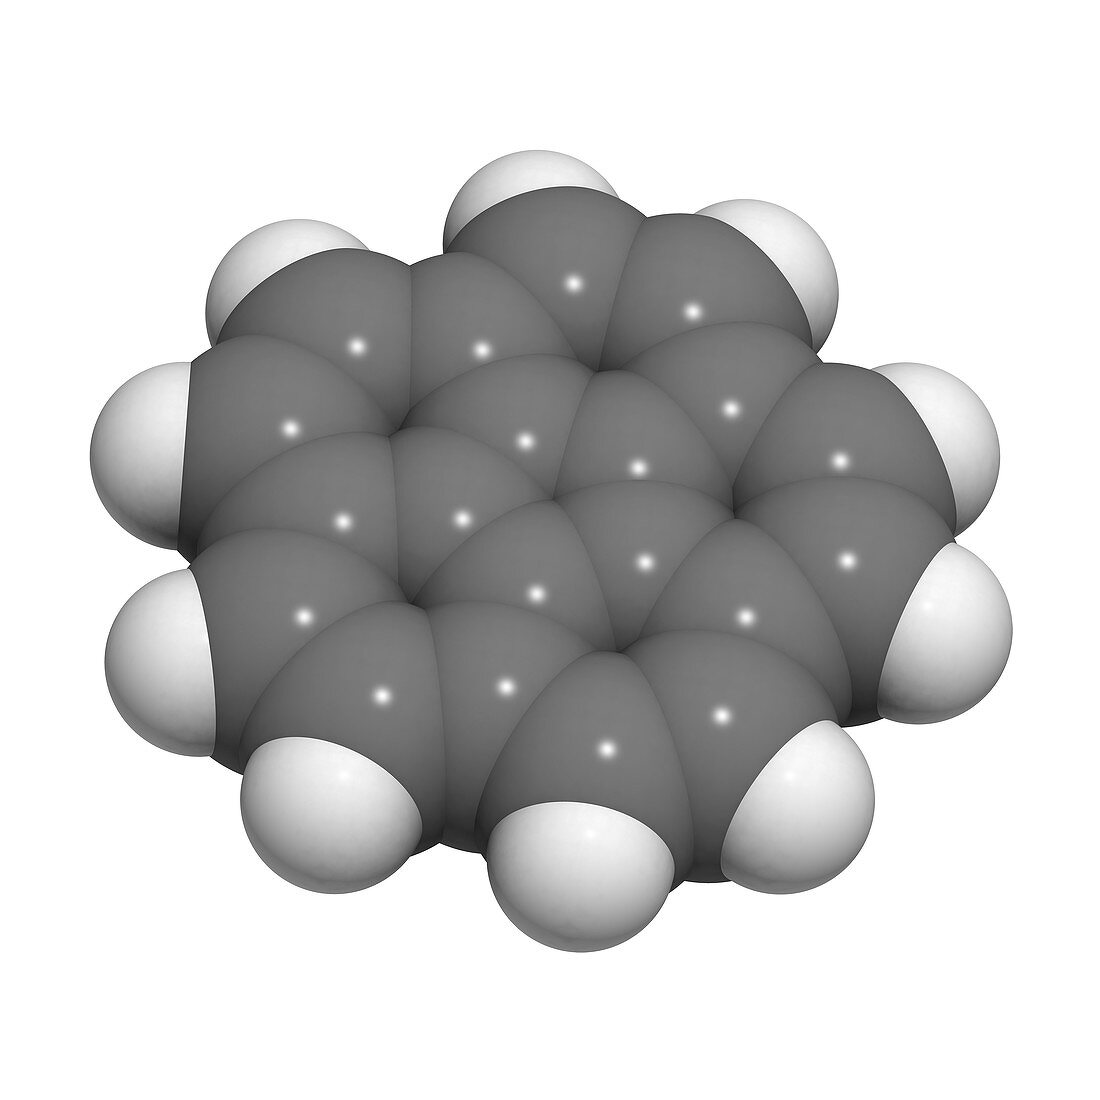 Corannulene polycyclic,molecular model